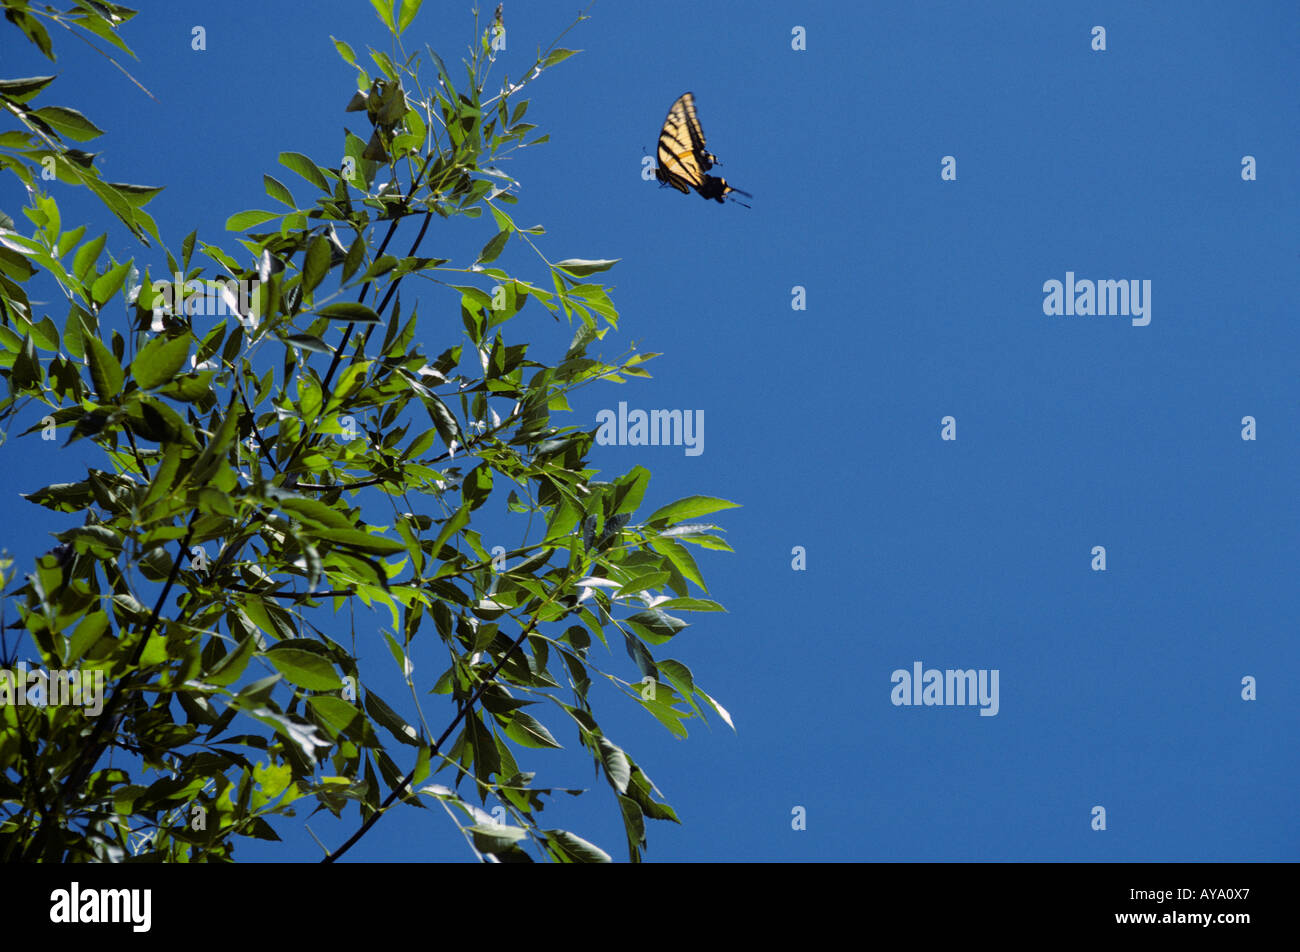 Un grand papillon jaune s'agite au-dessus des arbres contre un ciel bleu et encadré par le feuillage dans l'avant-plan. Banque D'Images